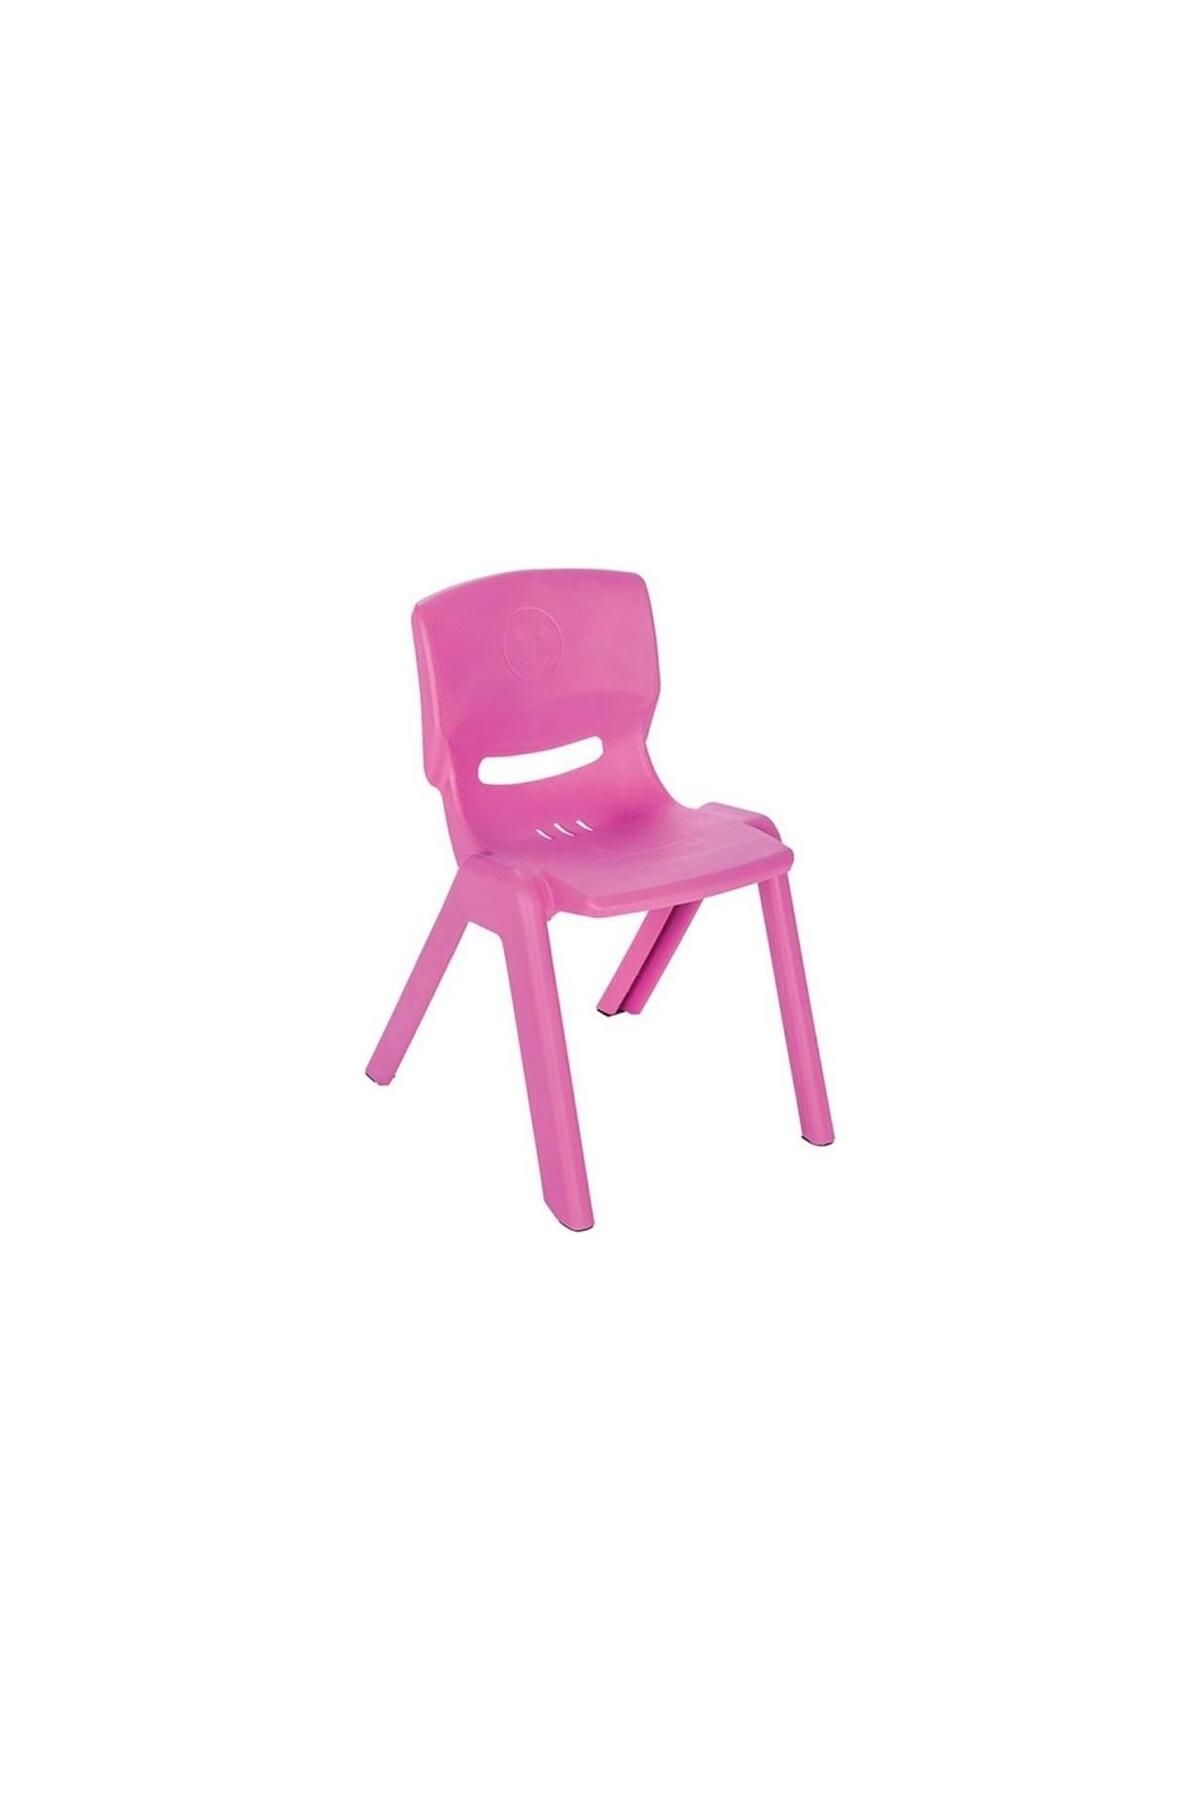 PİLSAN Pilsan Oyuncak Hapyy Sandalye Pembe Plastik Çocuk Sandalyesi